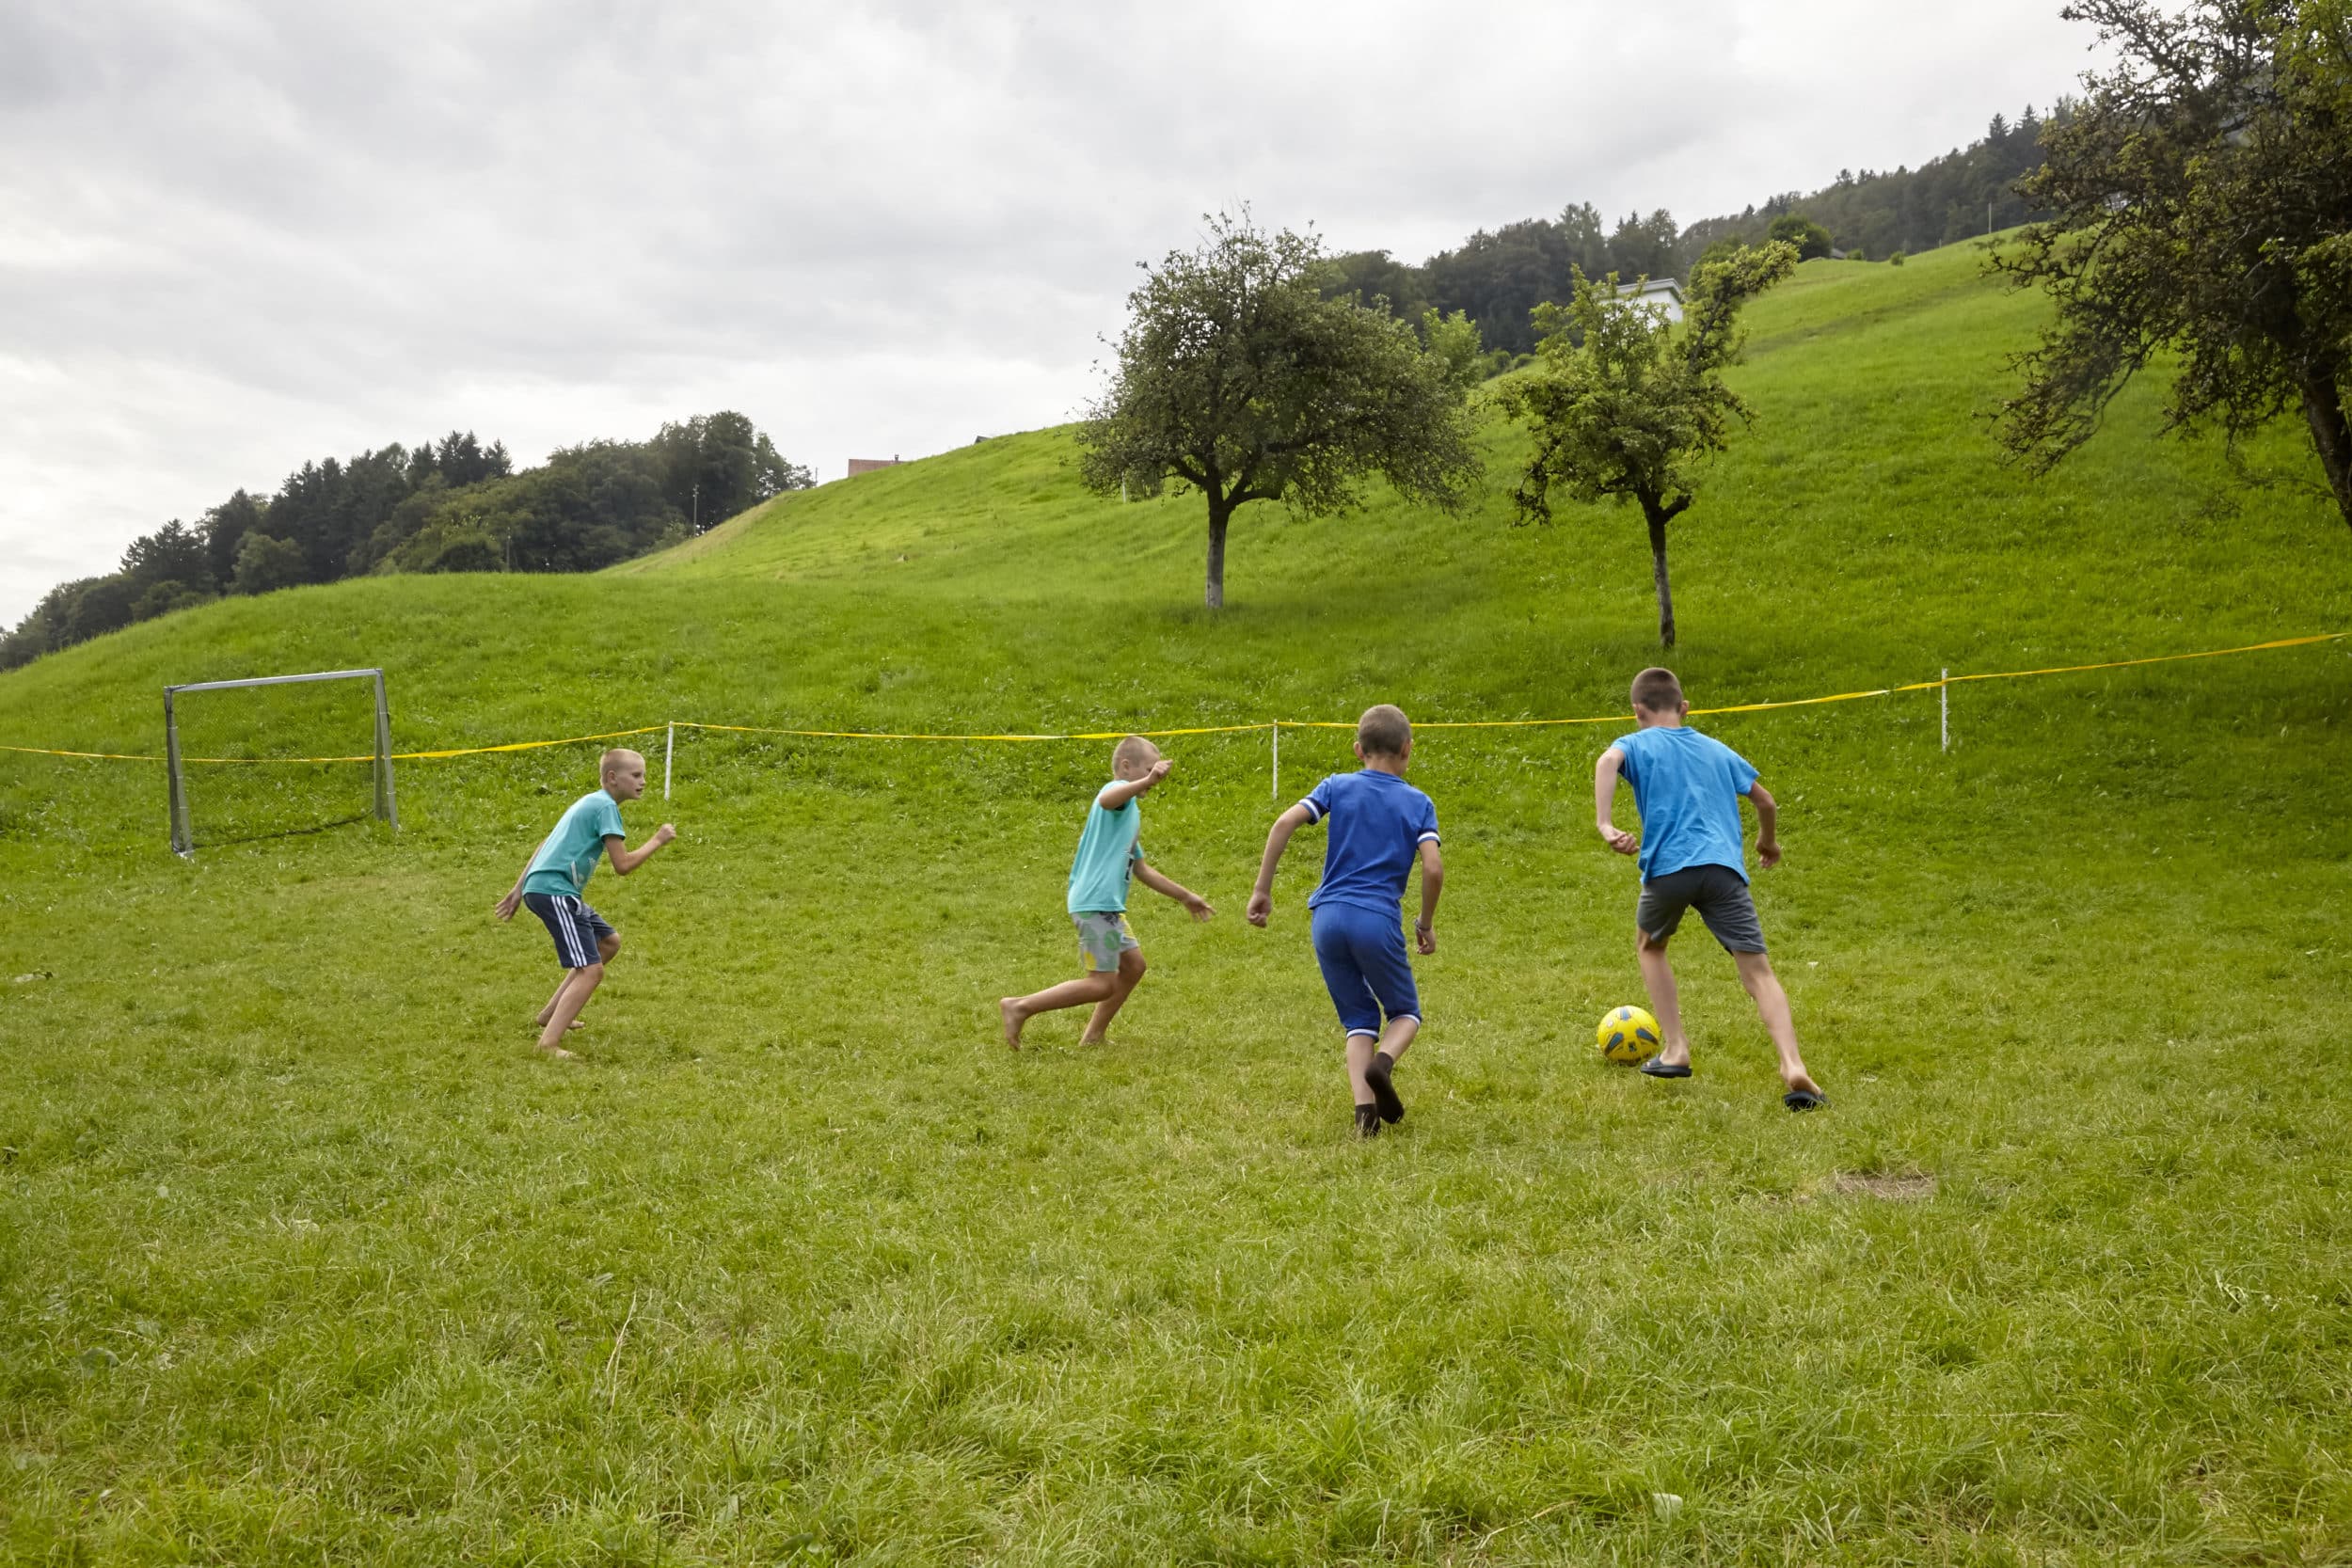 Ausgelassen an der frischen Luft Fussball spielen: Das stärkt die Kinder psychisch und körperlich.